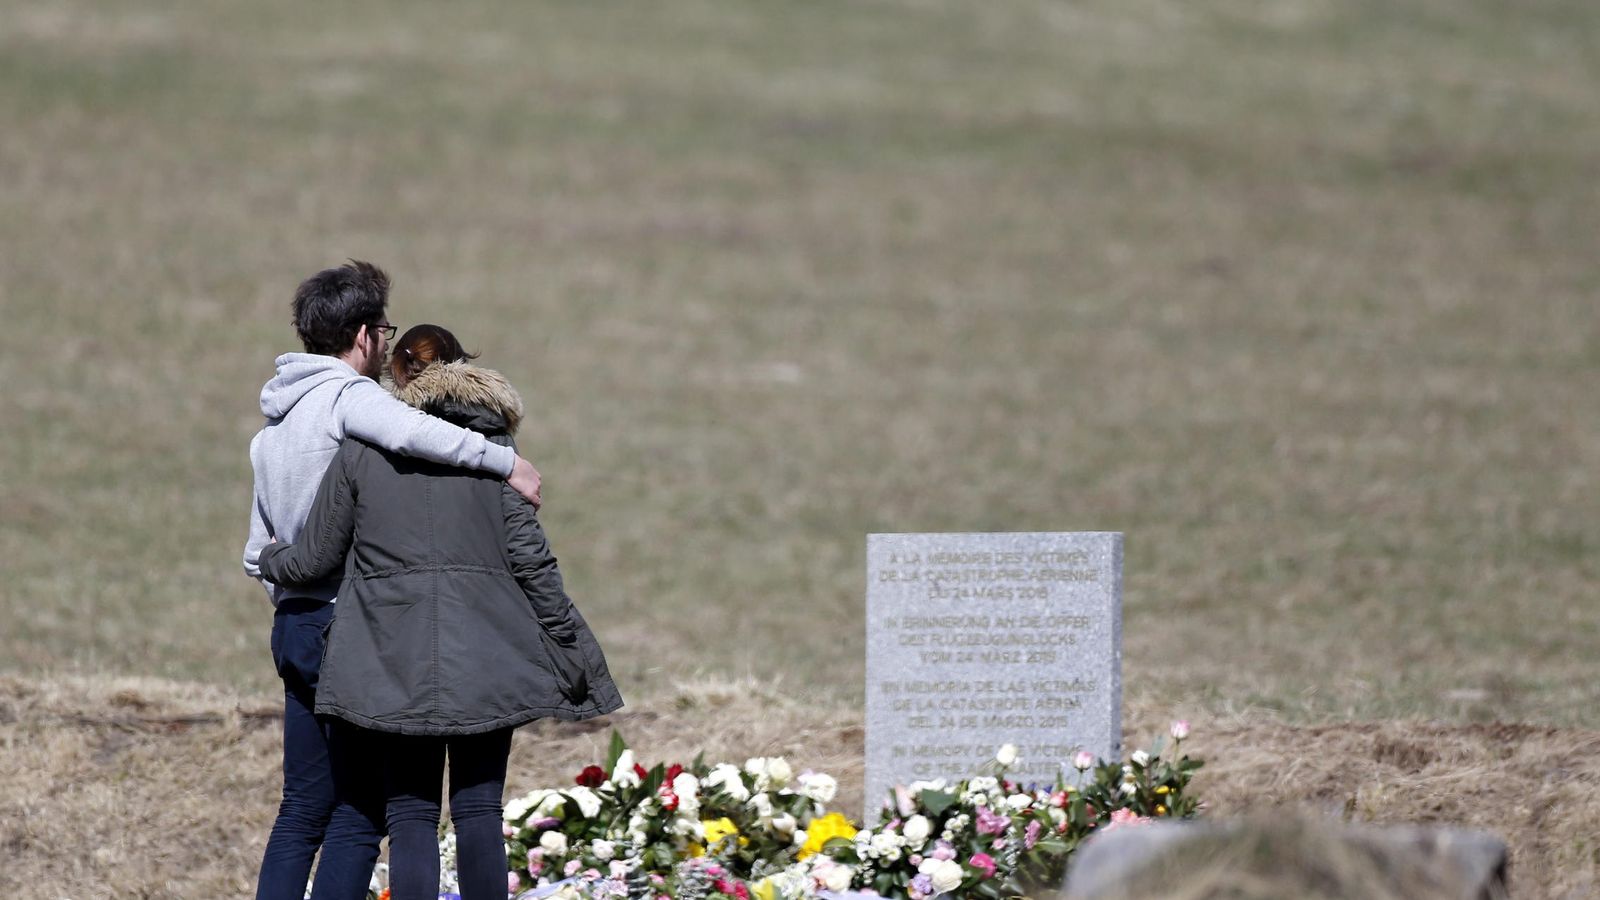 Foto: Familiares de las víctimas visitan el monolito en homenaje a los fallecidos del avión de Germanwings. (Efe)